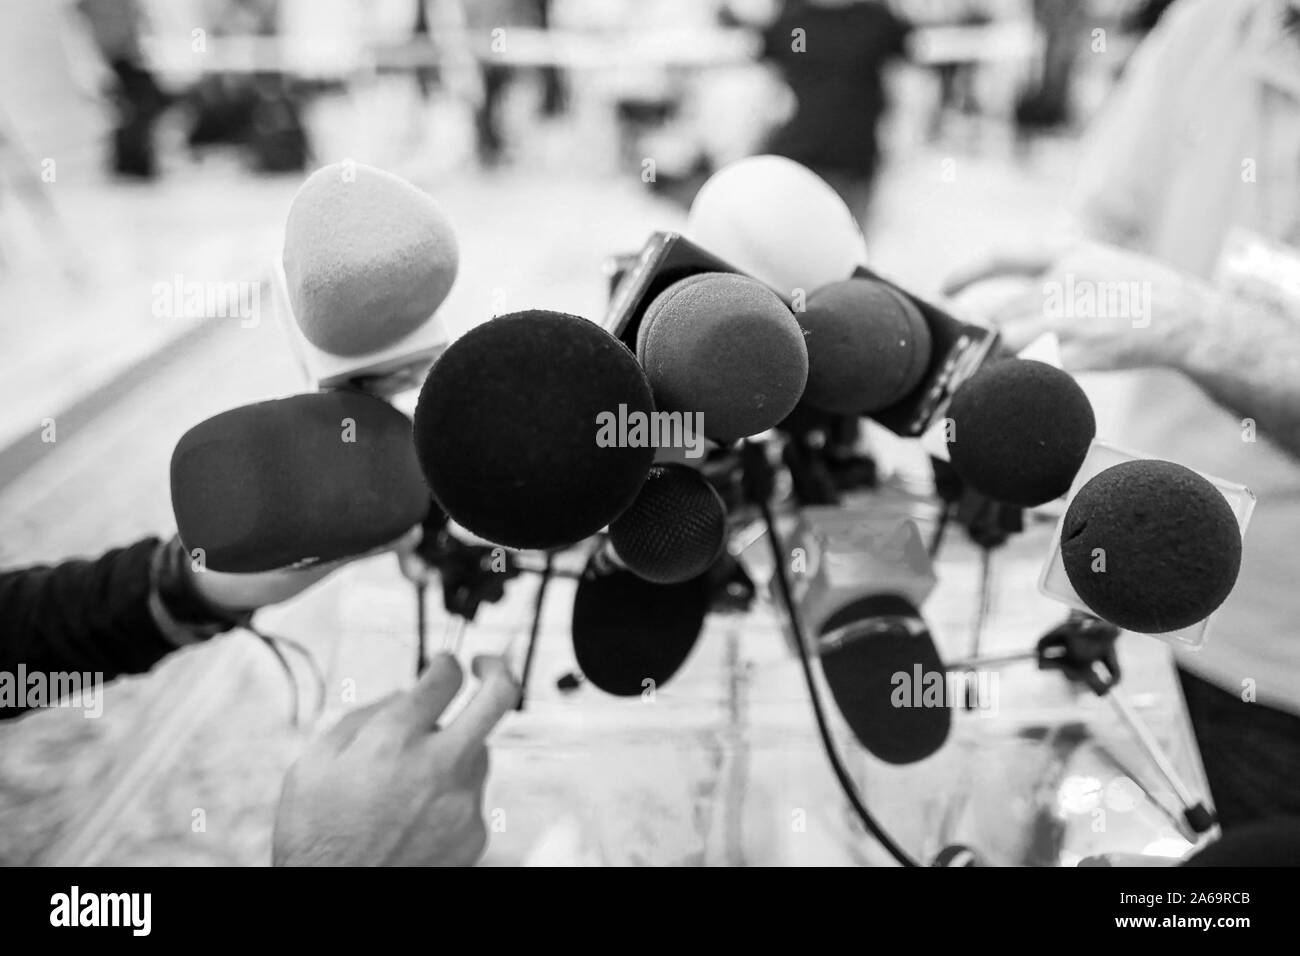 Profondeur de champ libre avec microphones installés par des journalistes lors d'une conférence de presse - point de vue politique Banque D'Images